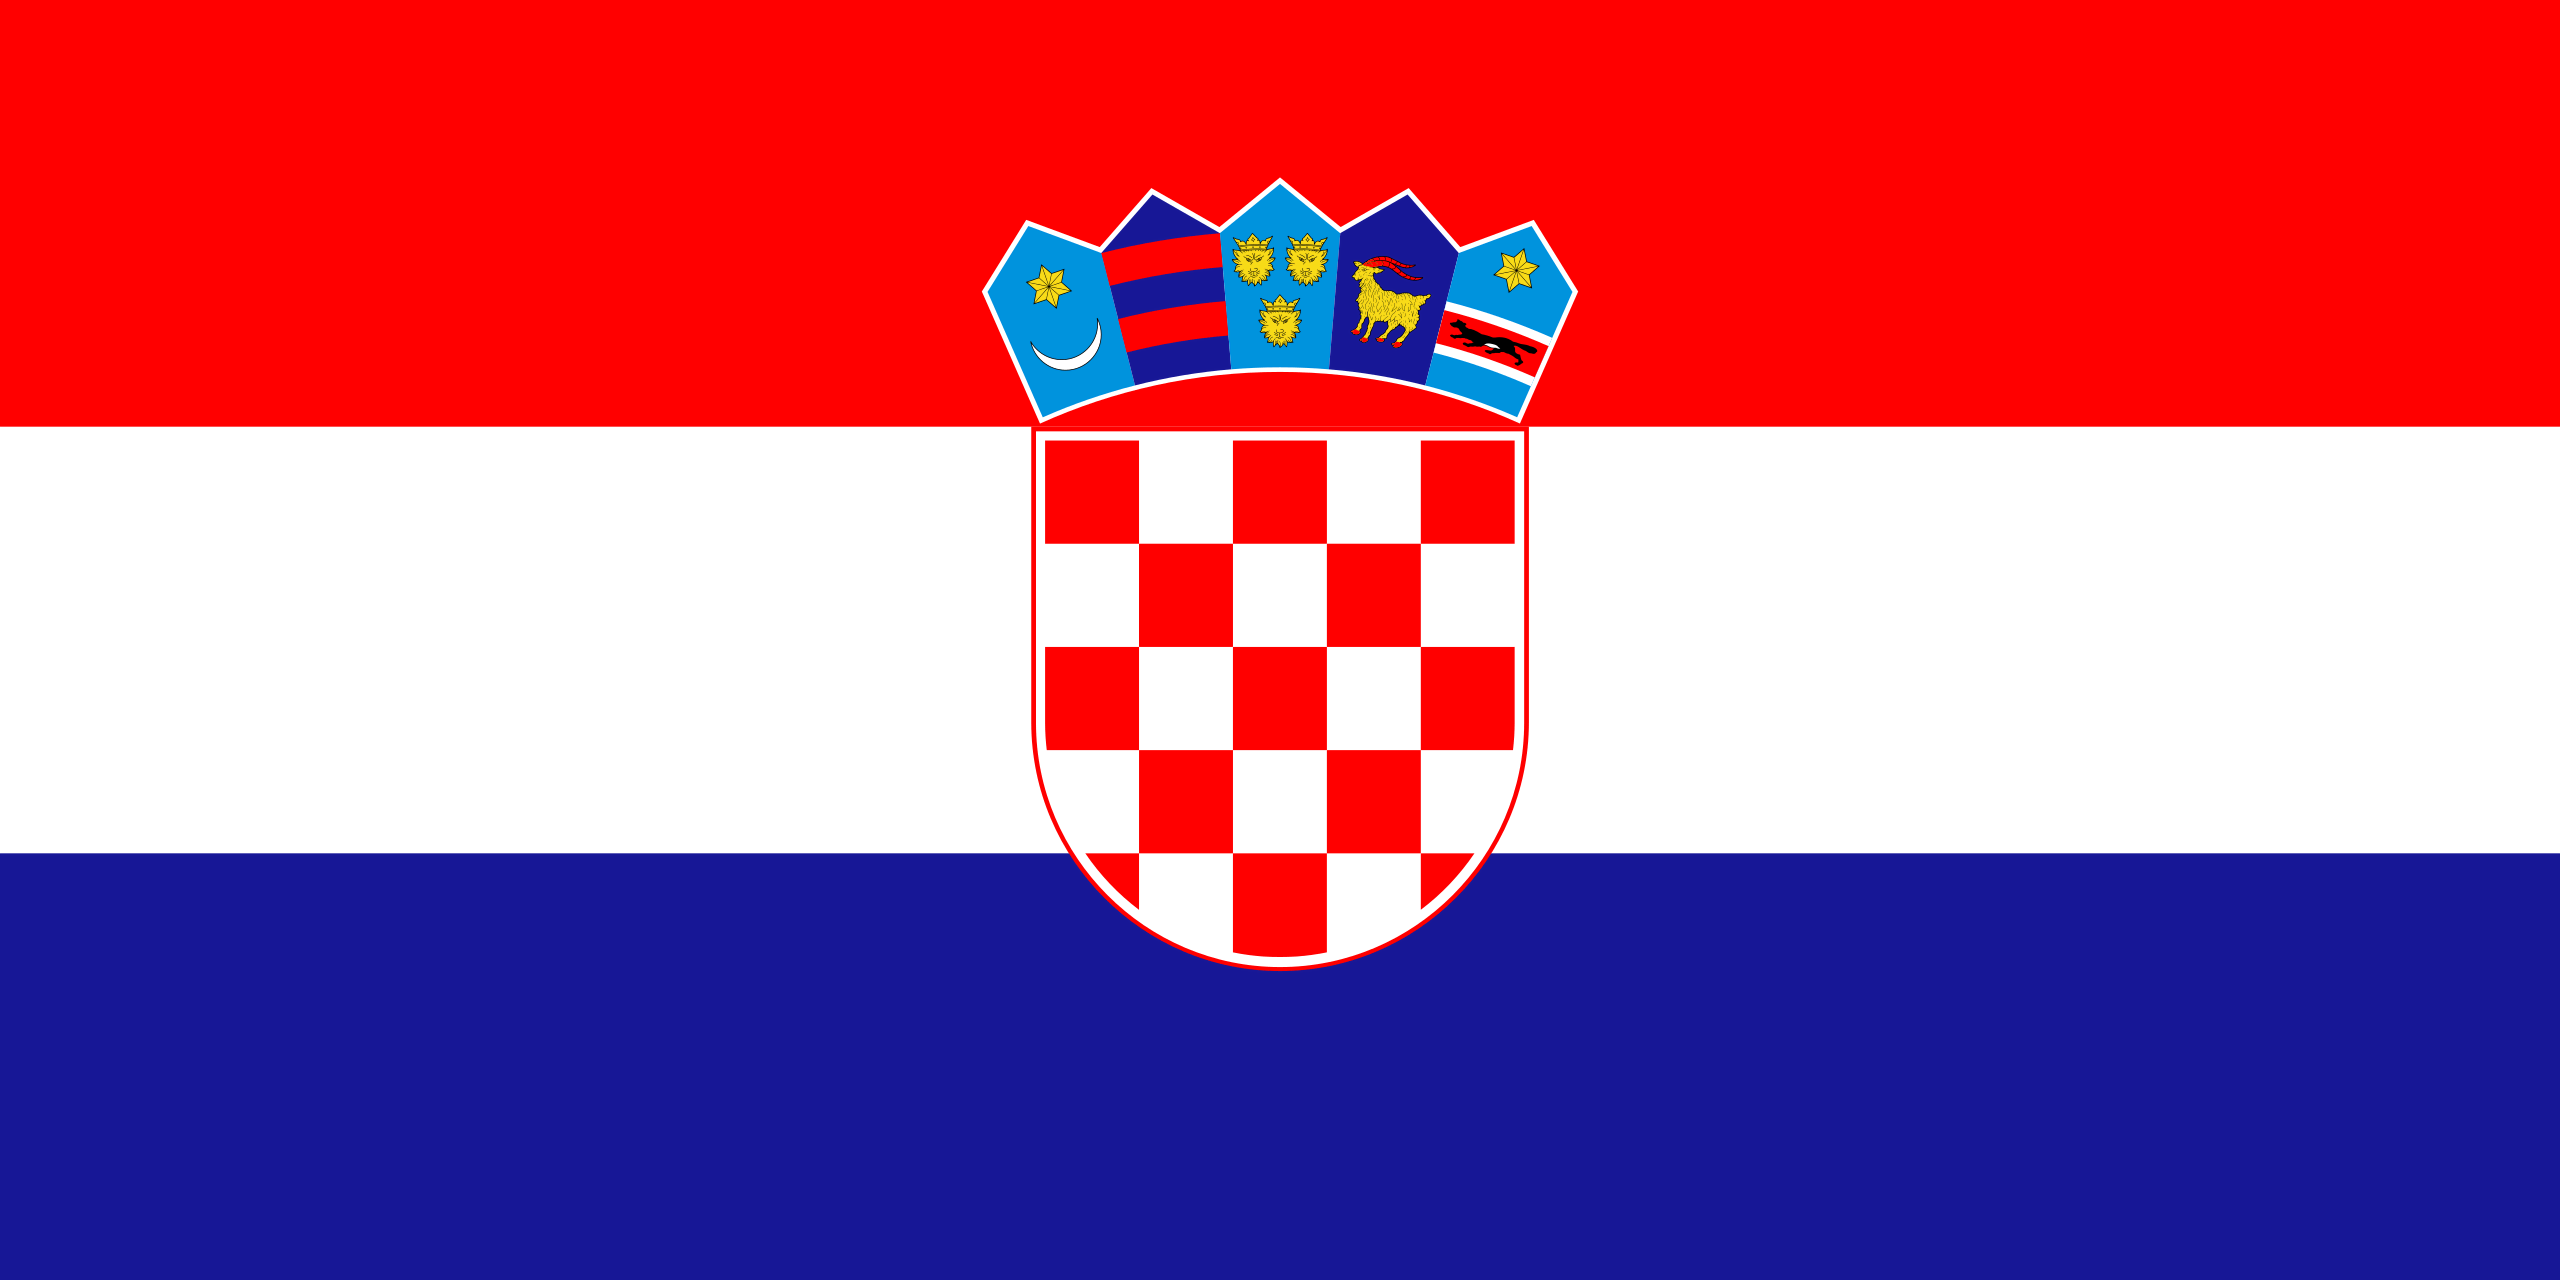 Quốc kỳ của Croatia